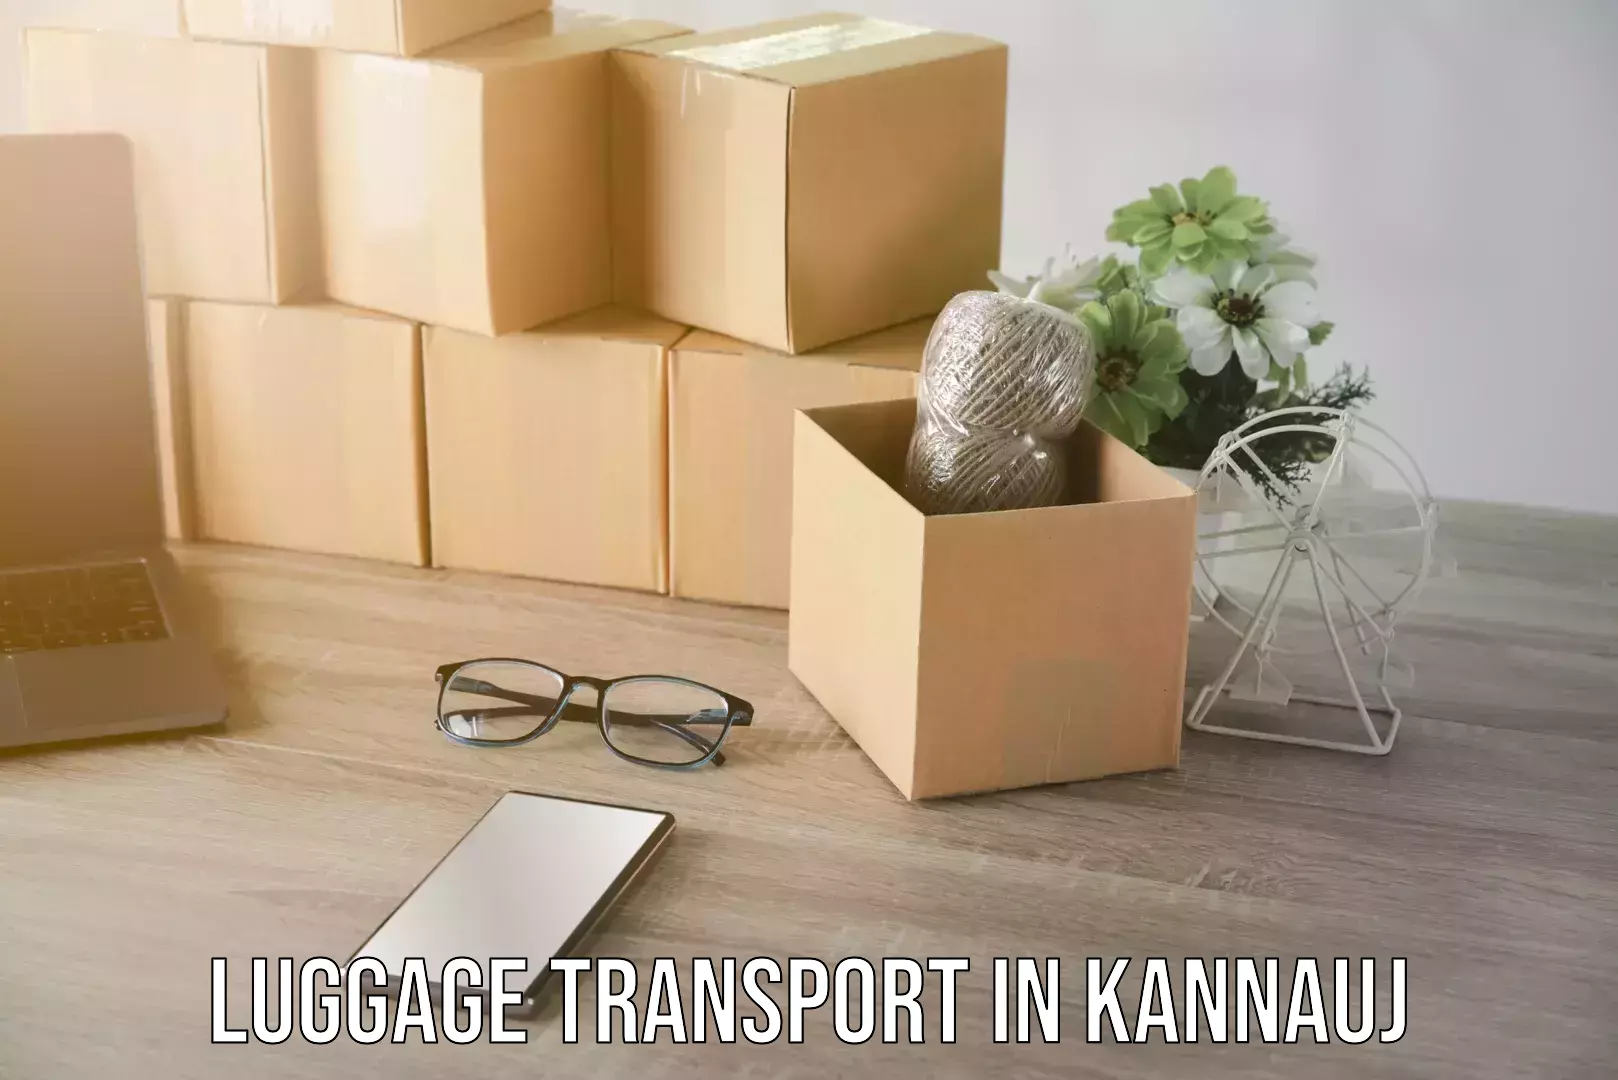 Regional luggage transport in Kannauj